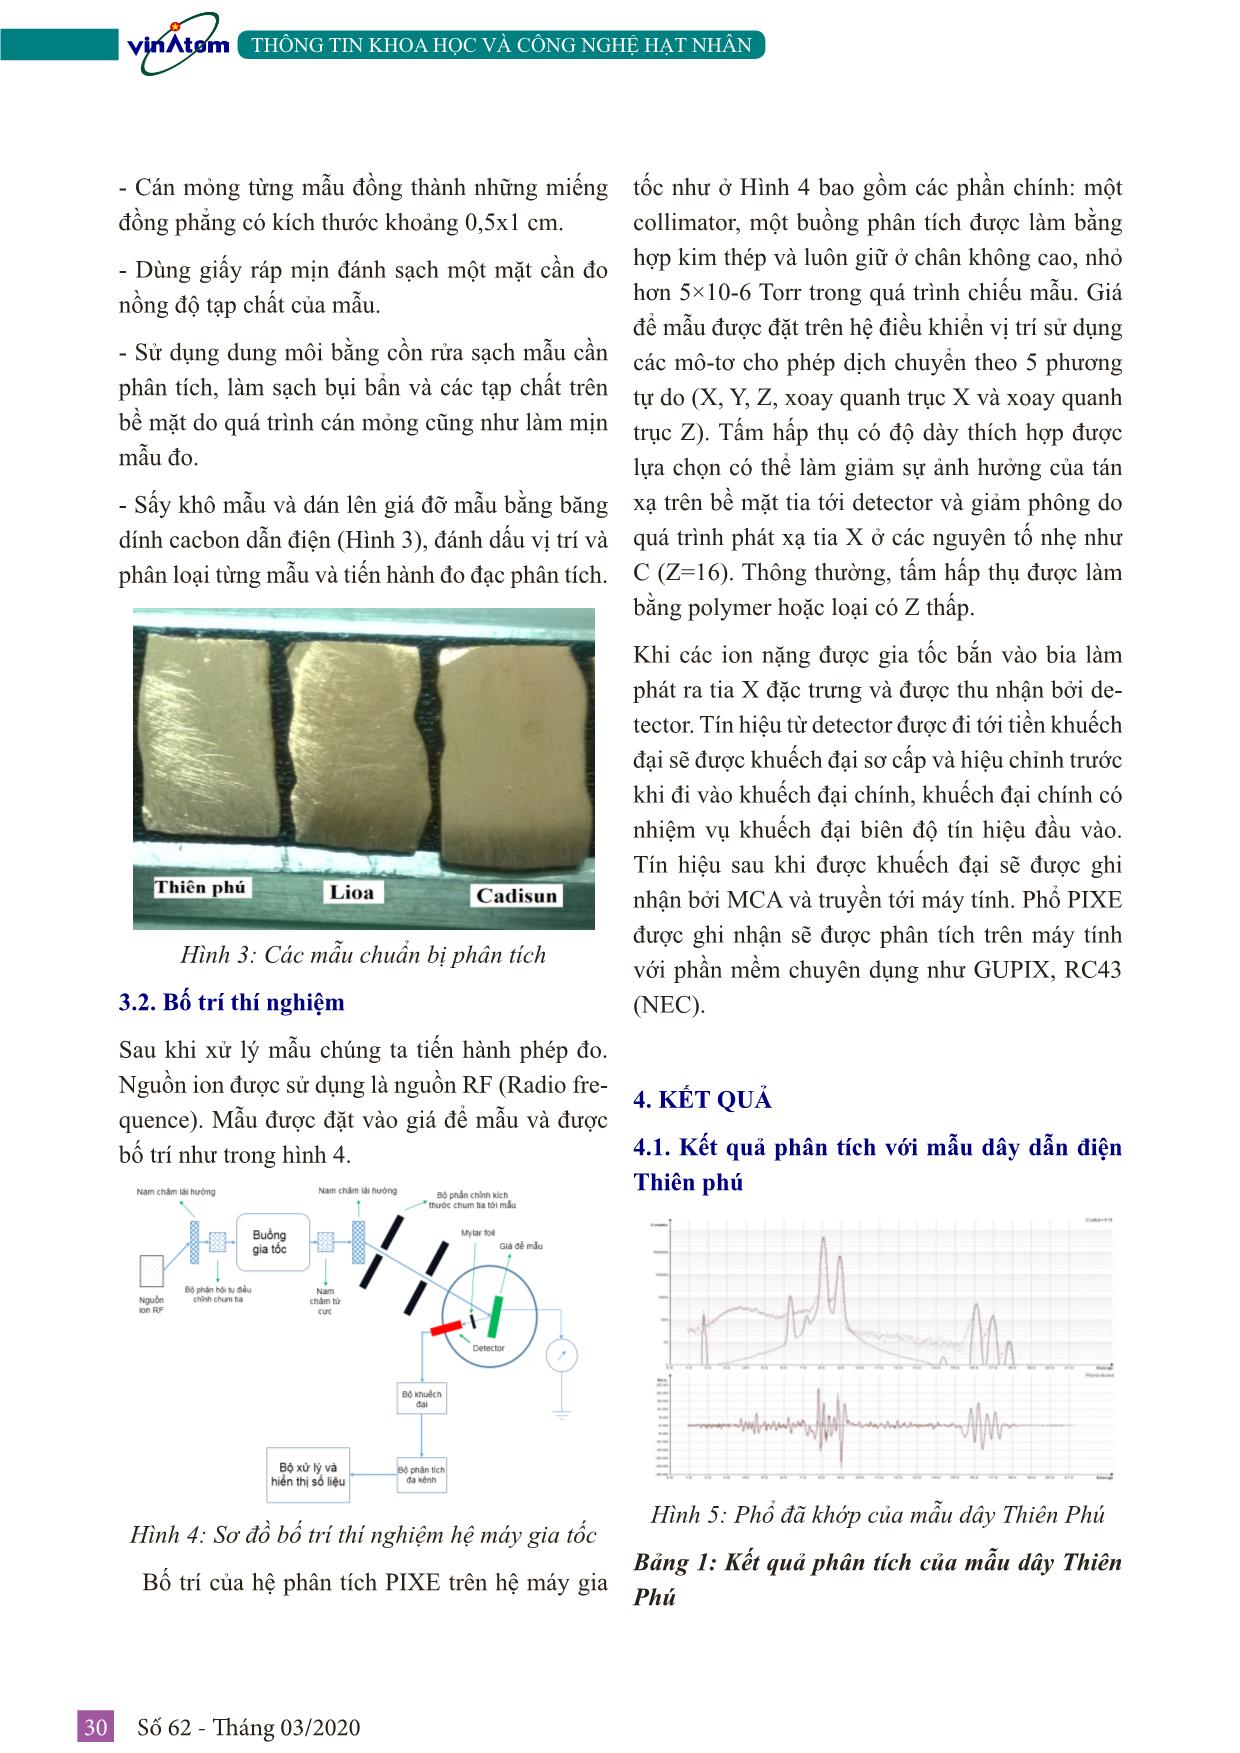 Đánh giá chất lượng của một vài loại dây dẫn điện phổ biến ở Việt Nam bằng phân tích pixe trang 3